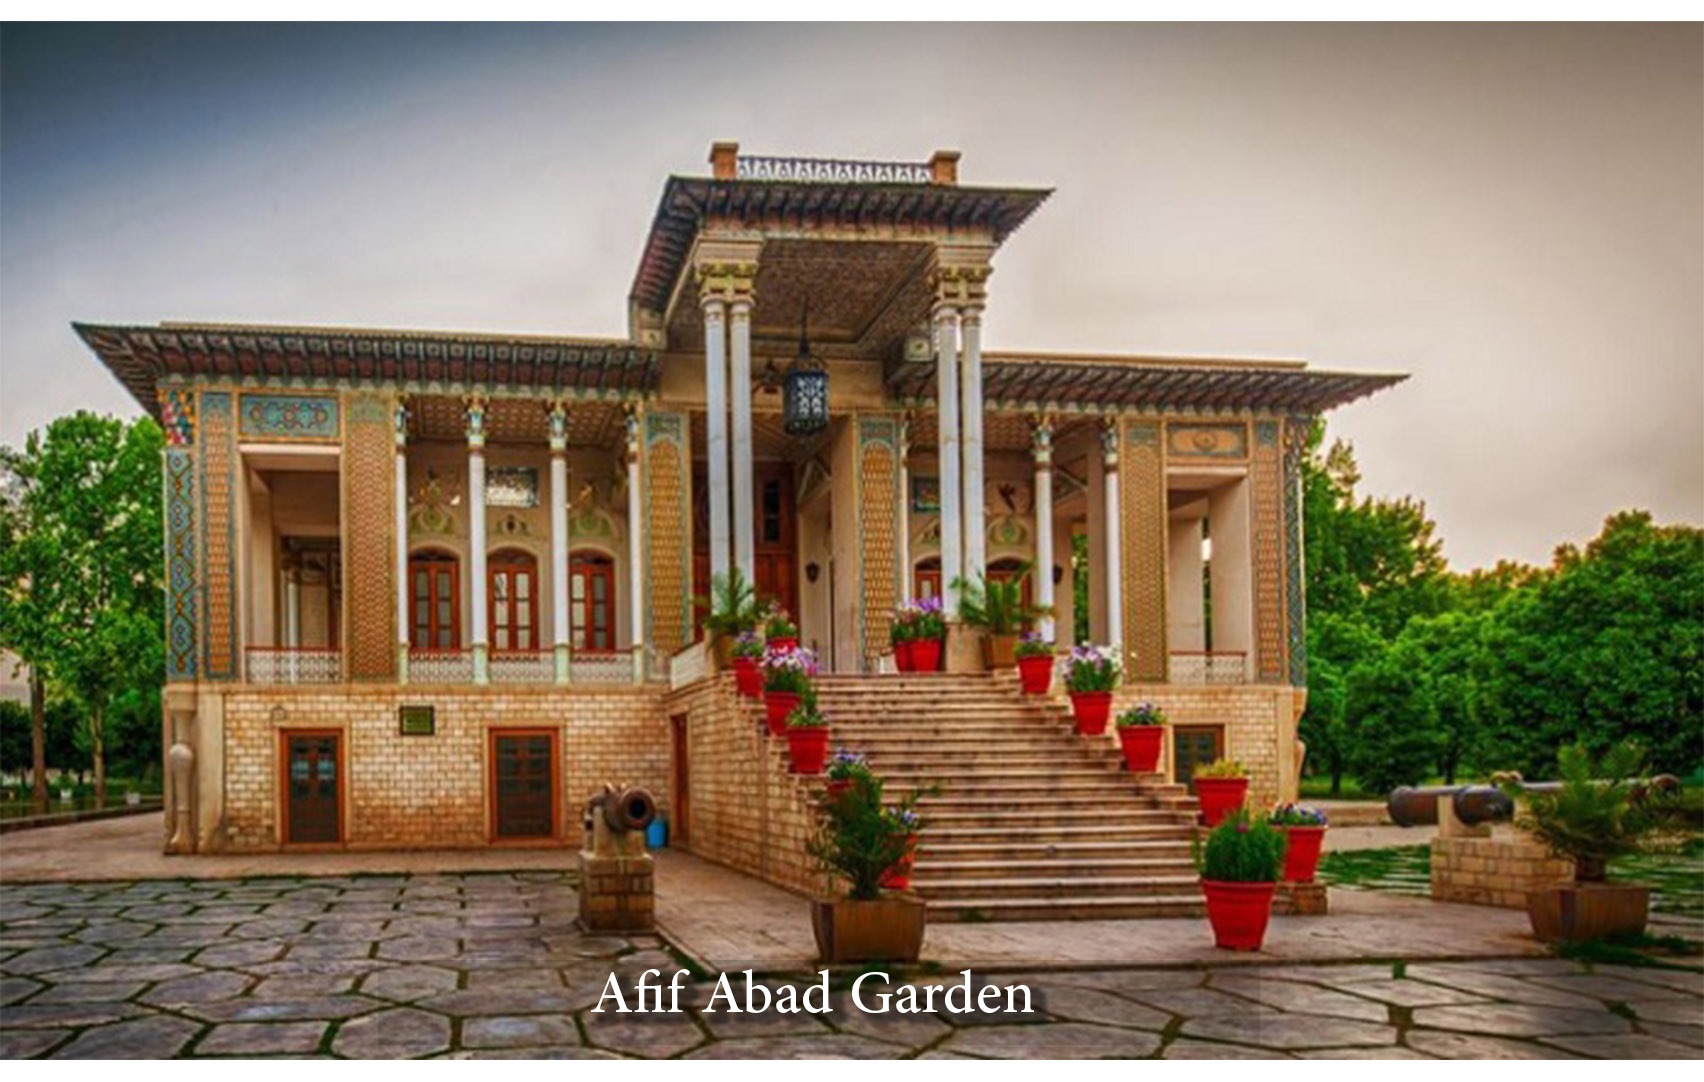 Afif Abad garden